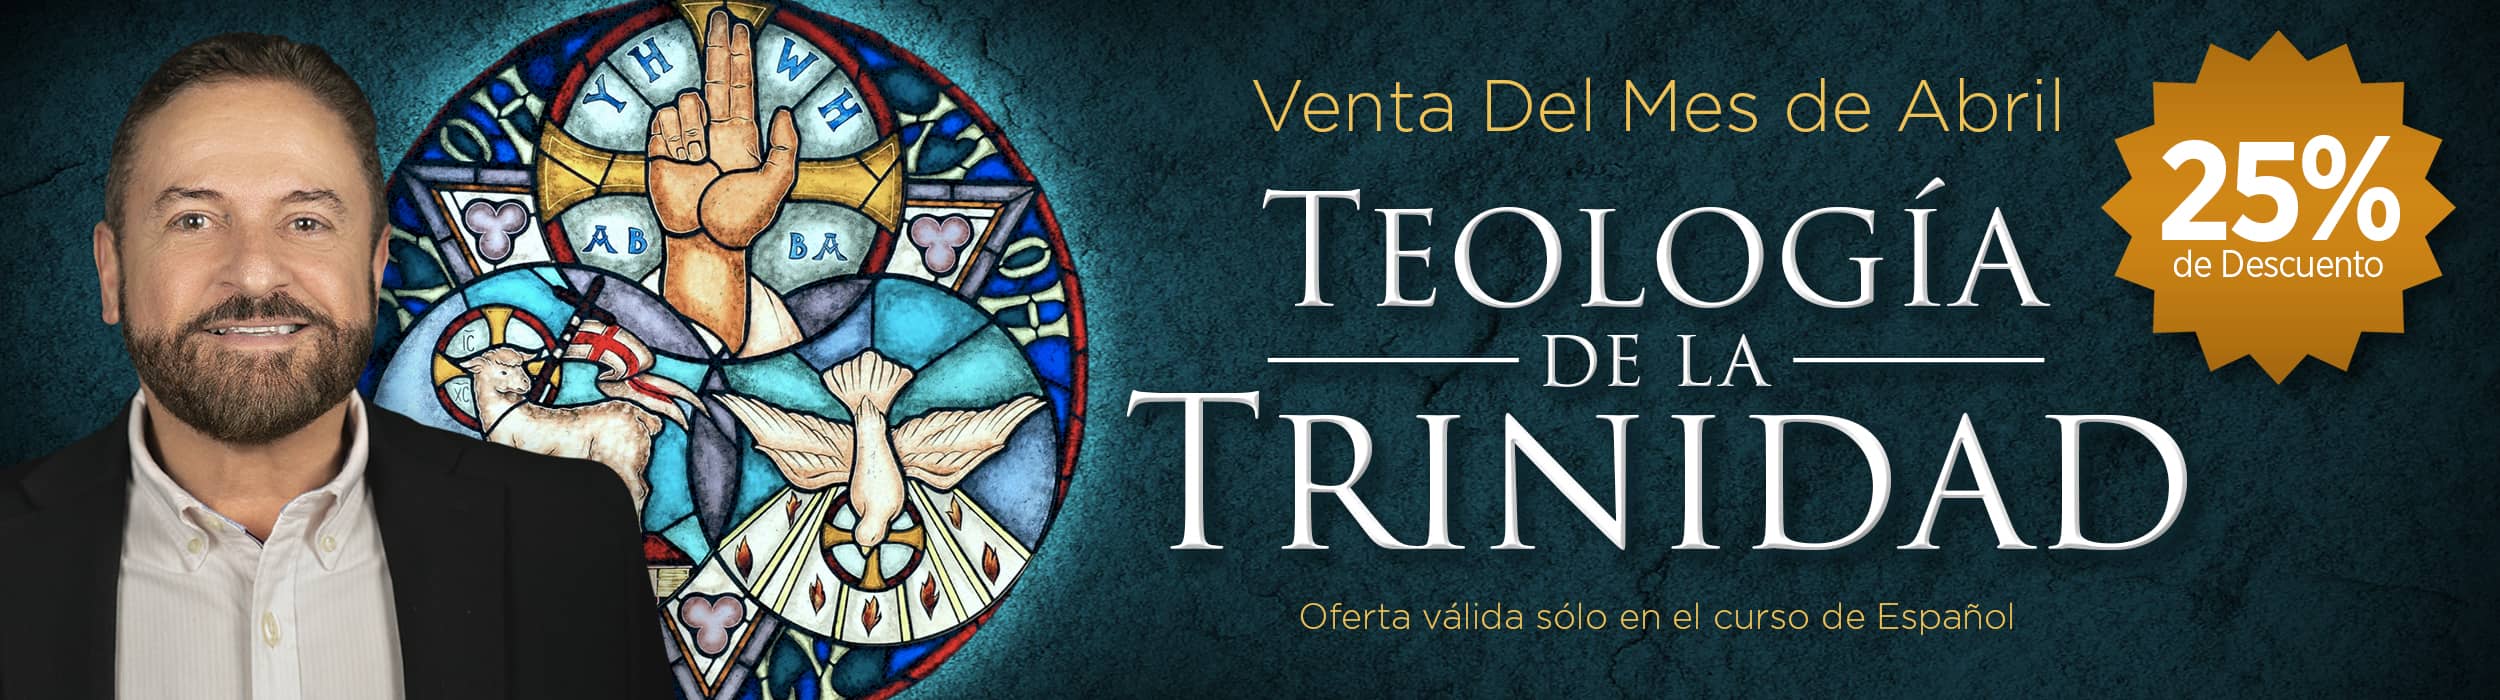 Teología de la Trinidad – Banner del sitio web v2